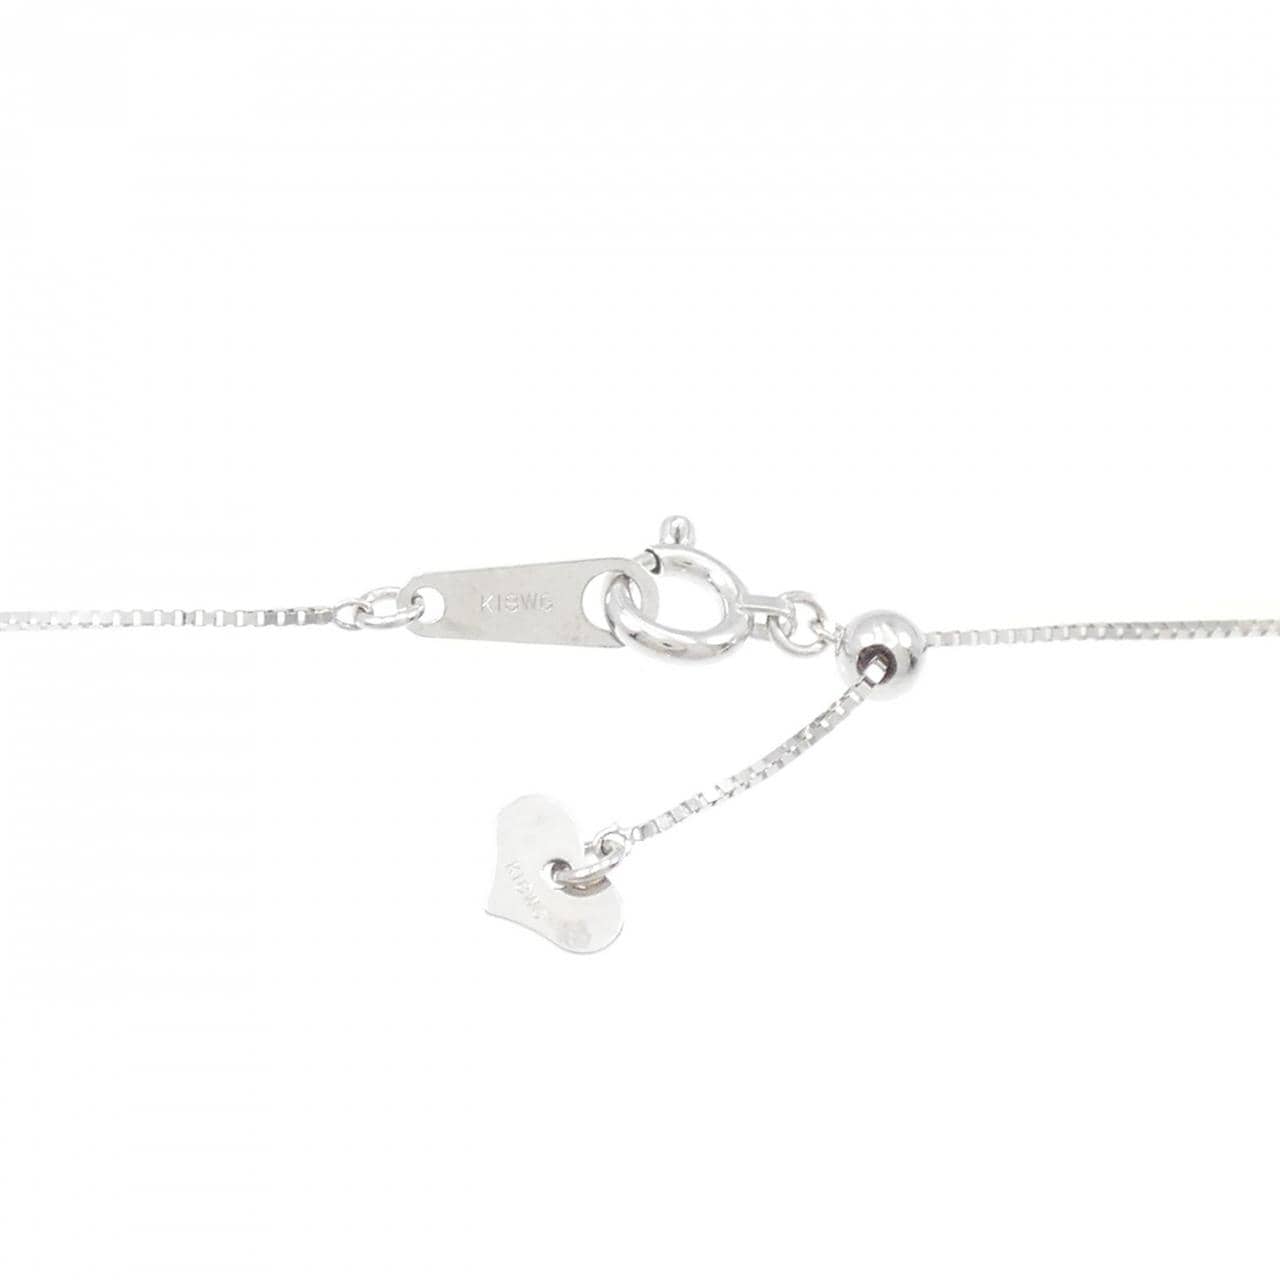 K18WG three stone Diamond necklace 0.50CT